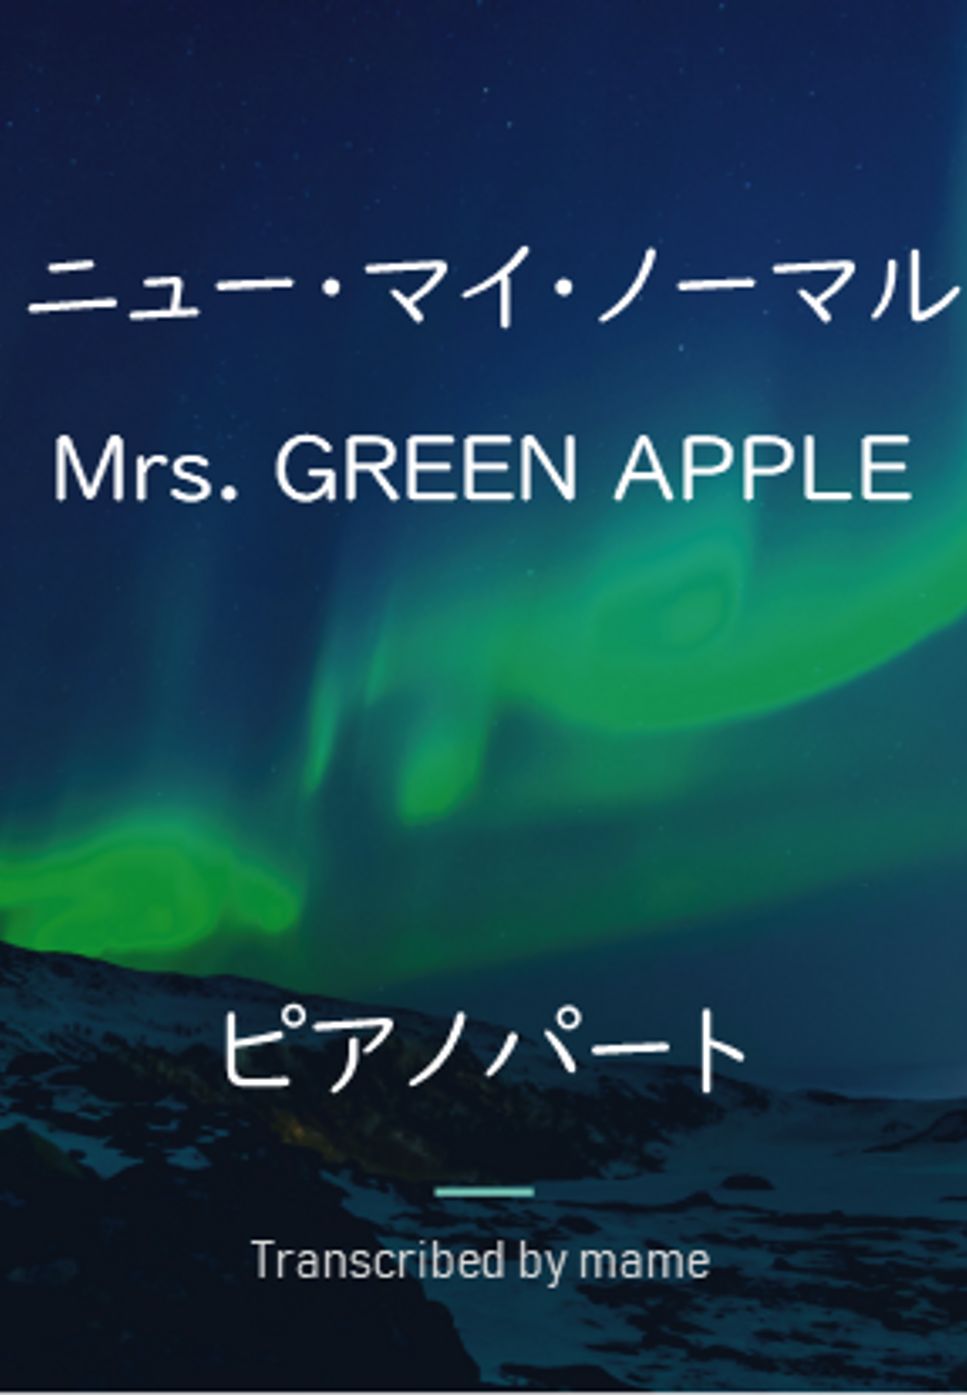 Mrs. GREEN APPLE - ニュー・マイ・ノーマル (ピアノパート) by mame